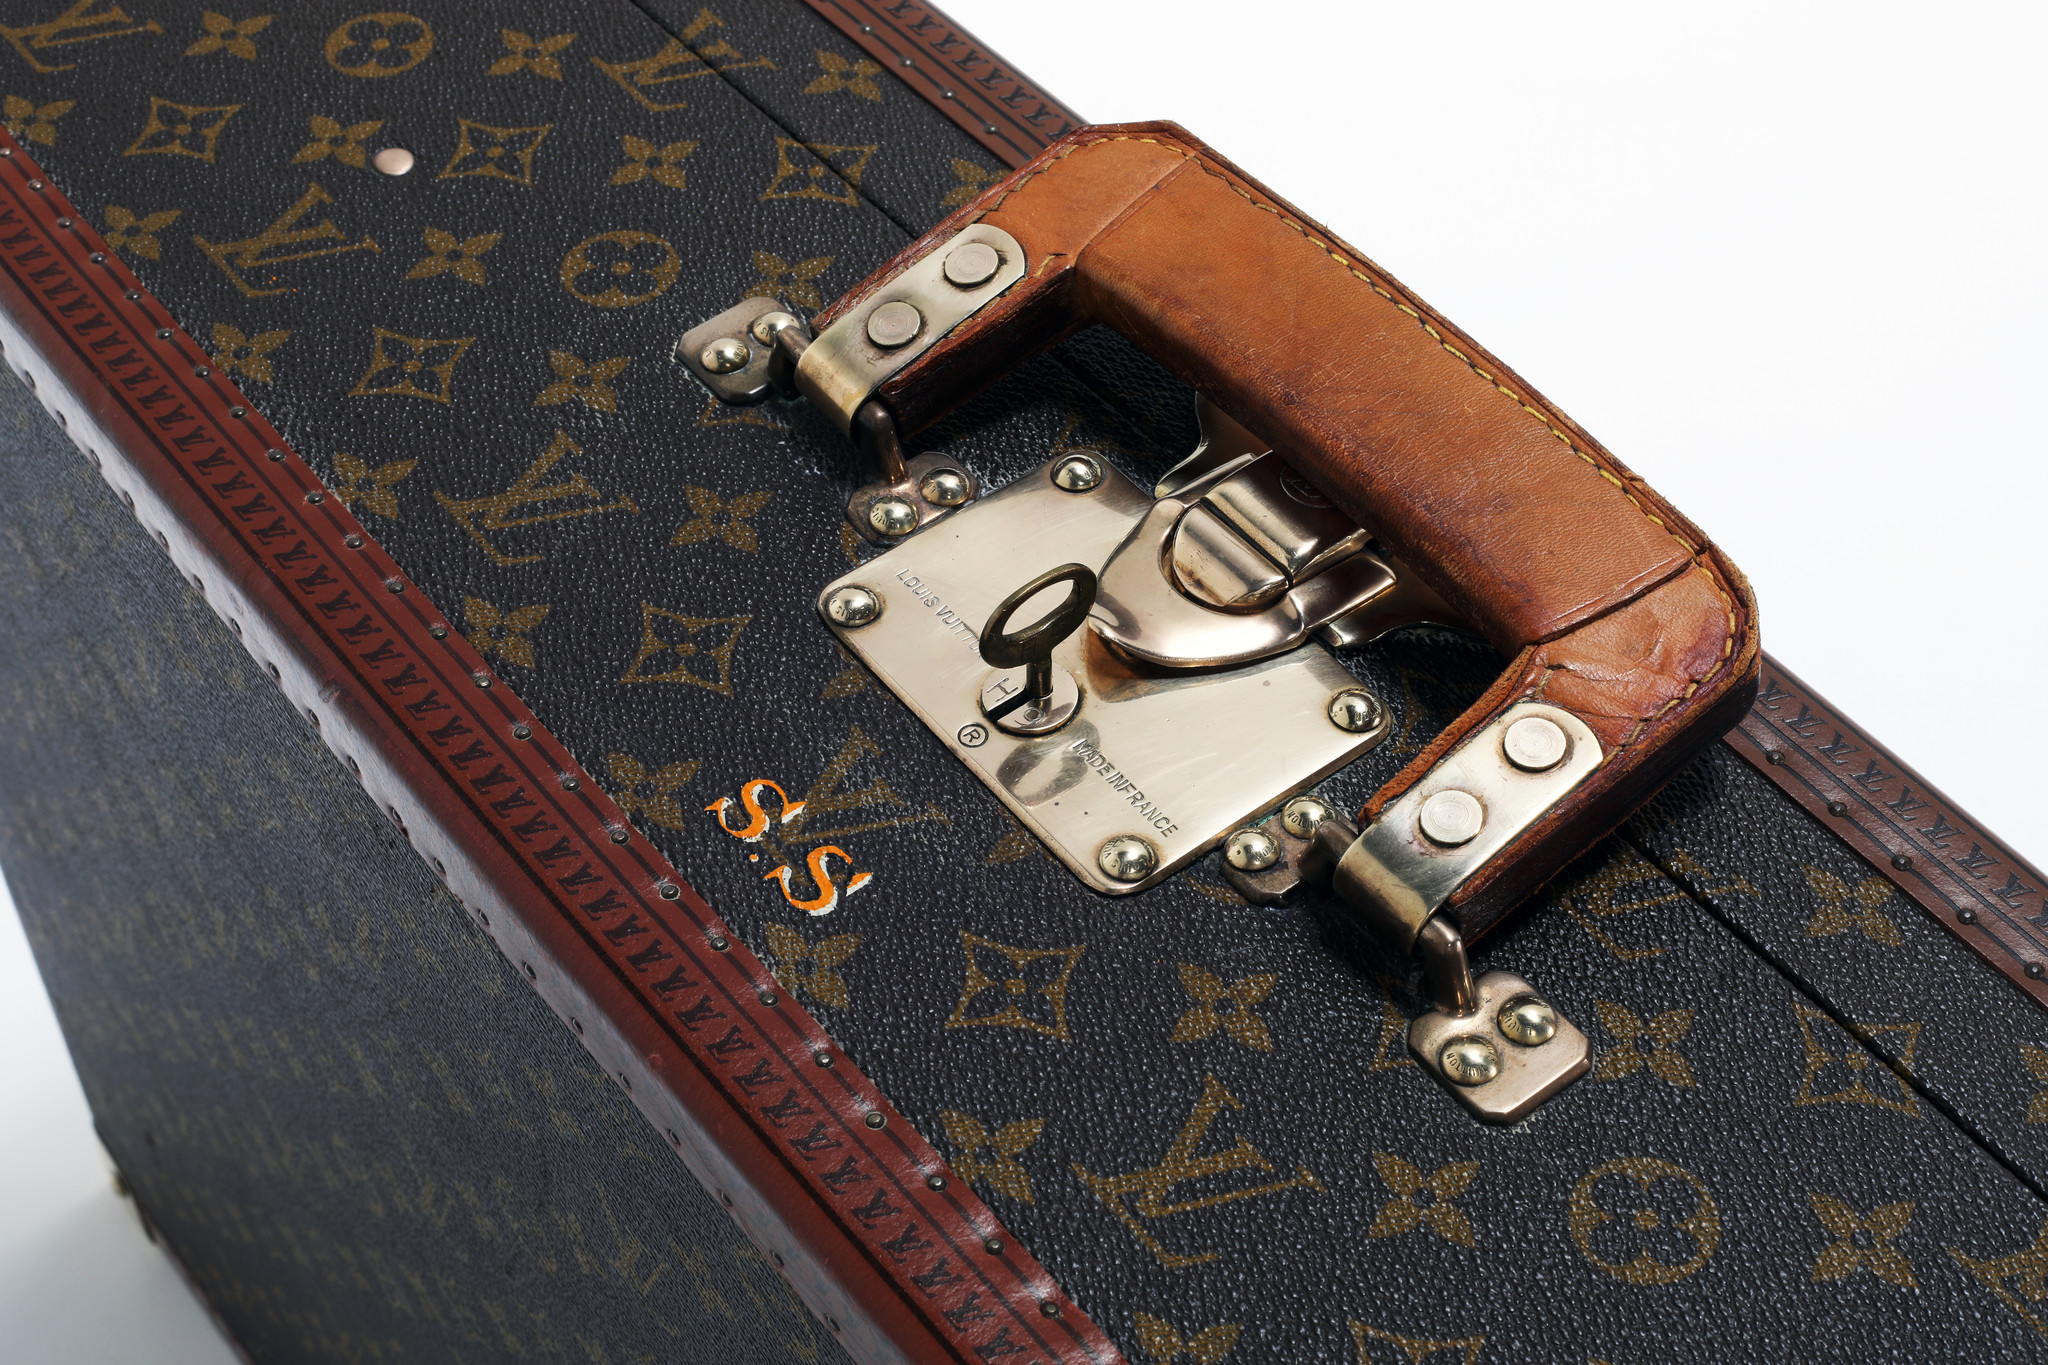 Louis Vuitton "Bisten" suitcase